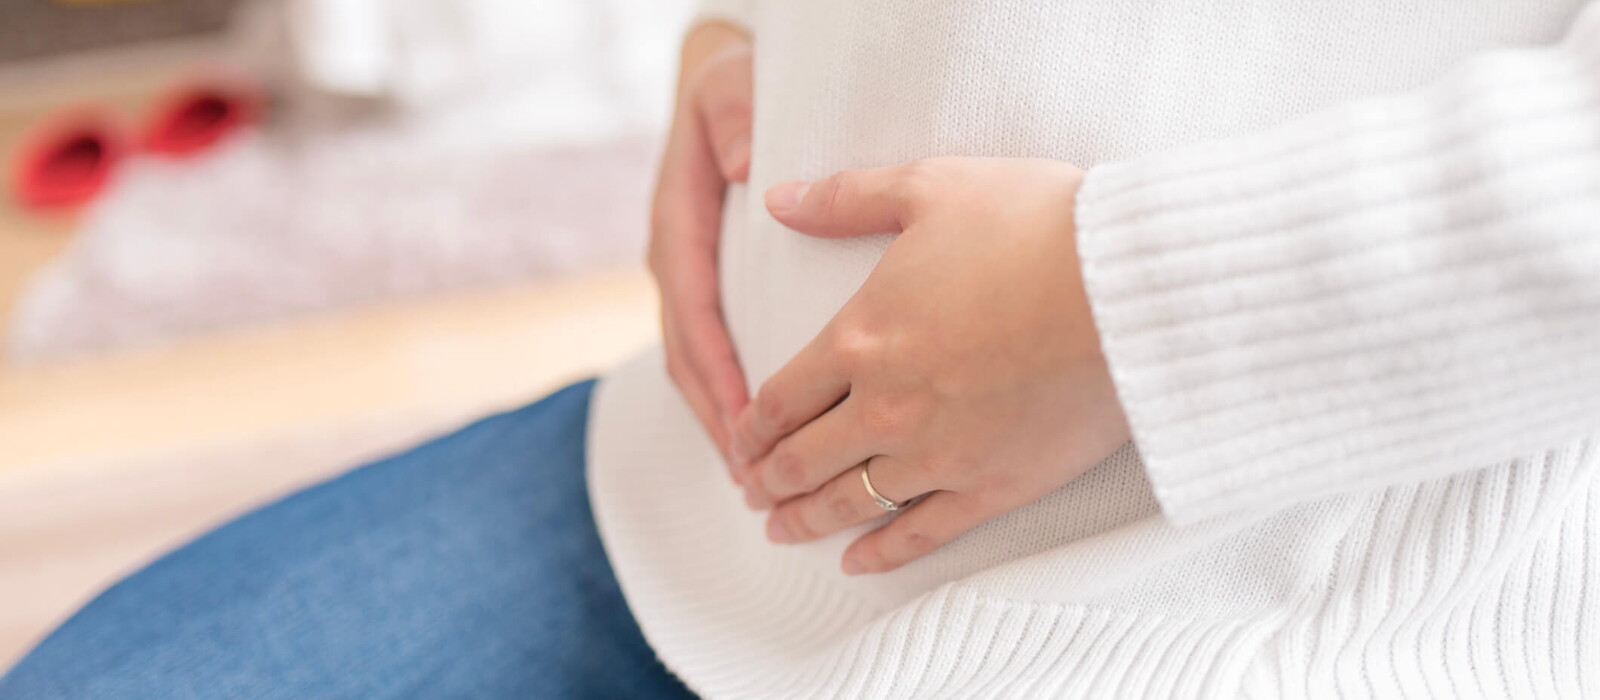 10 อาการคนท้อง อาการเตือนคนเริ่มท้องระยะแรก ที่คุณแม่สังเกตได้